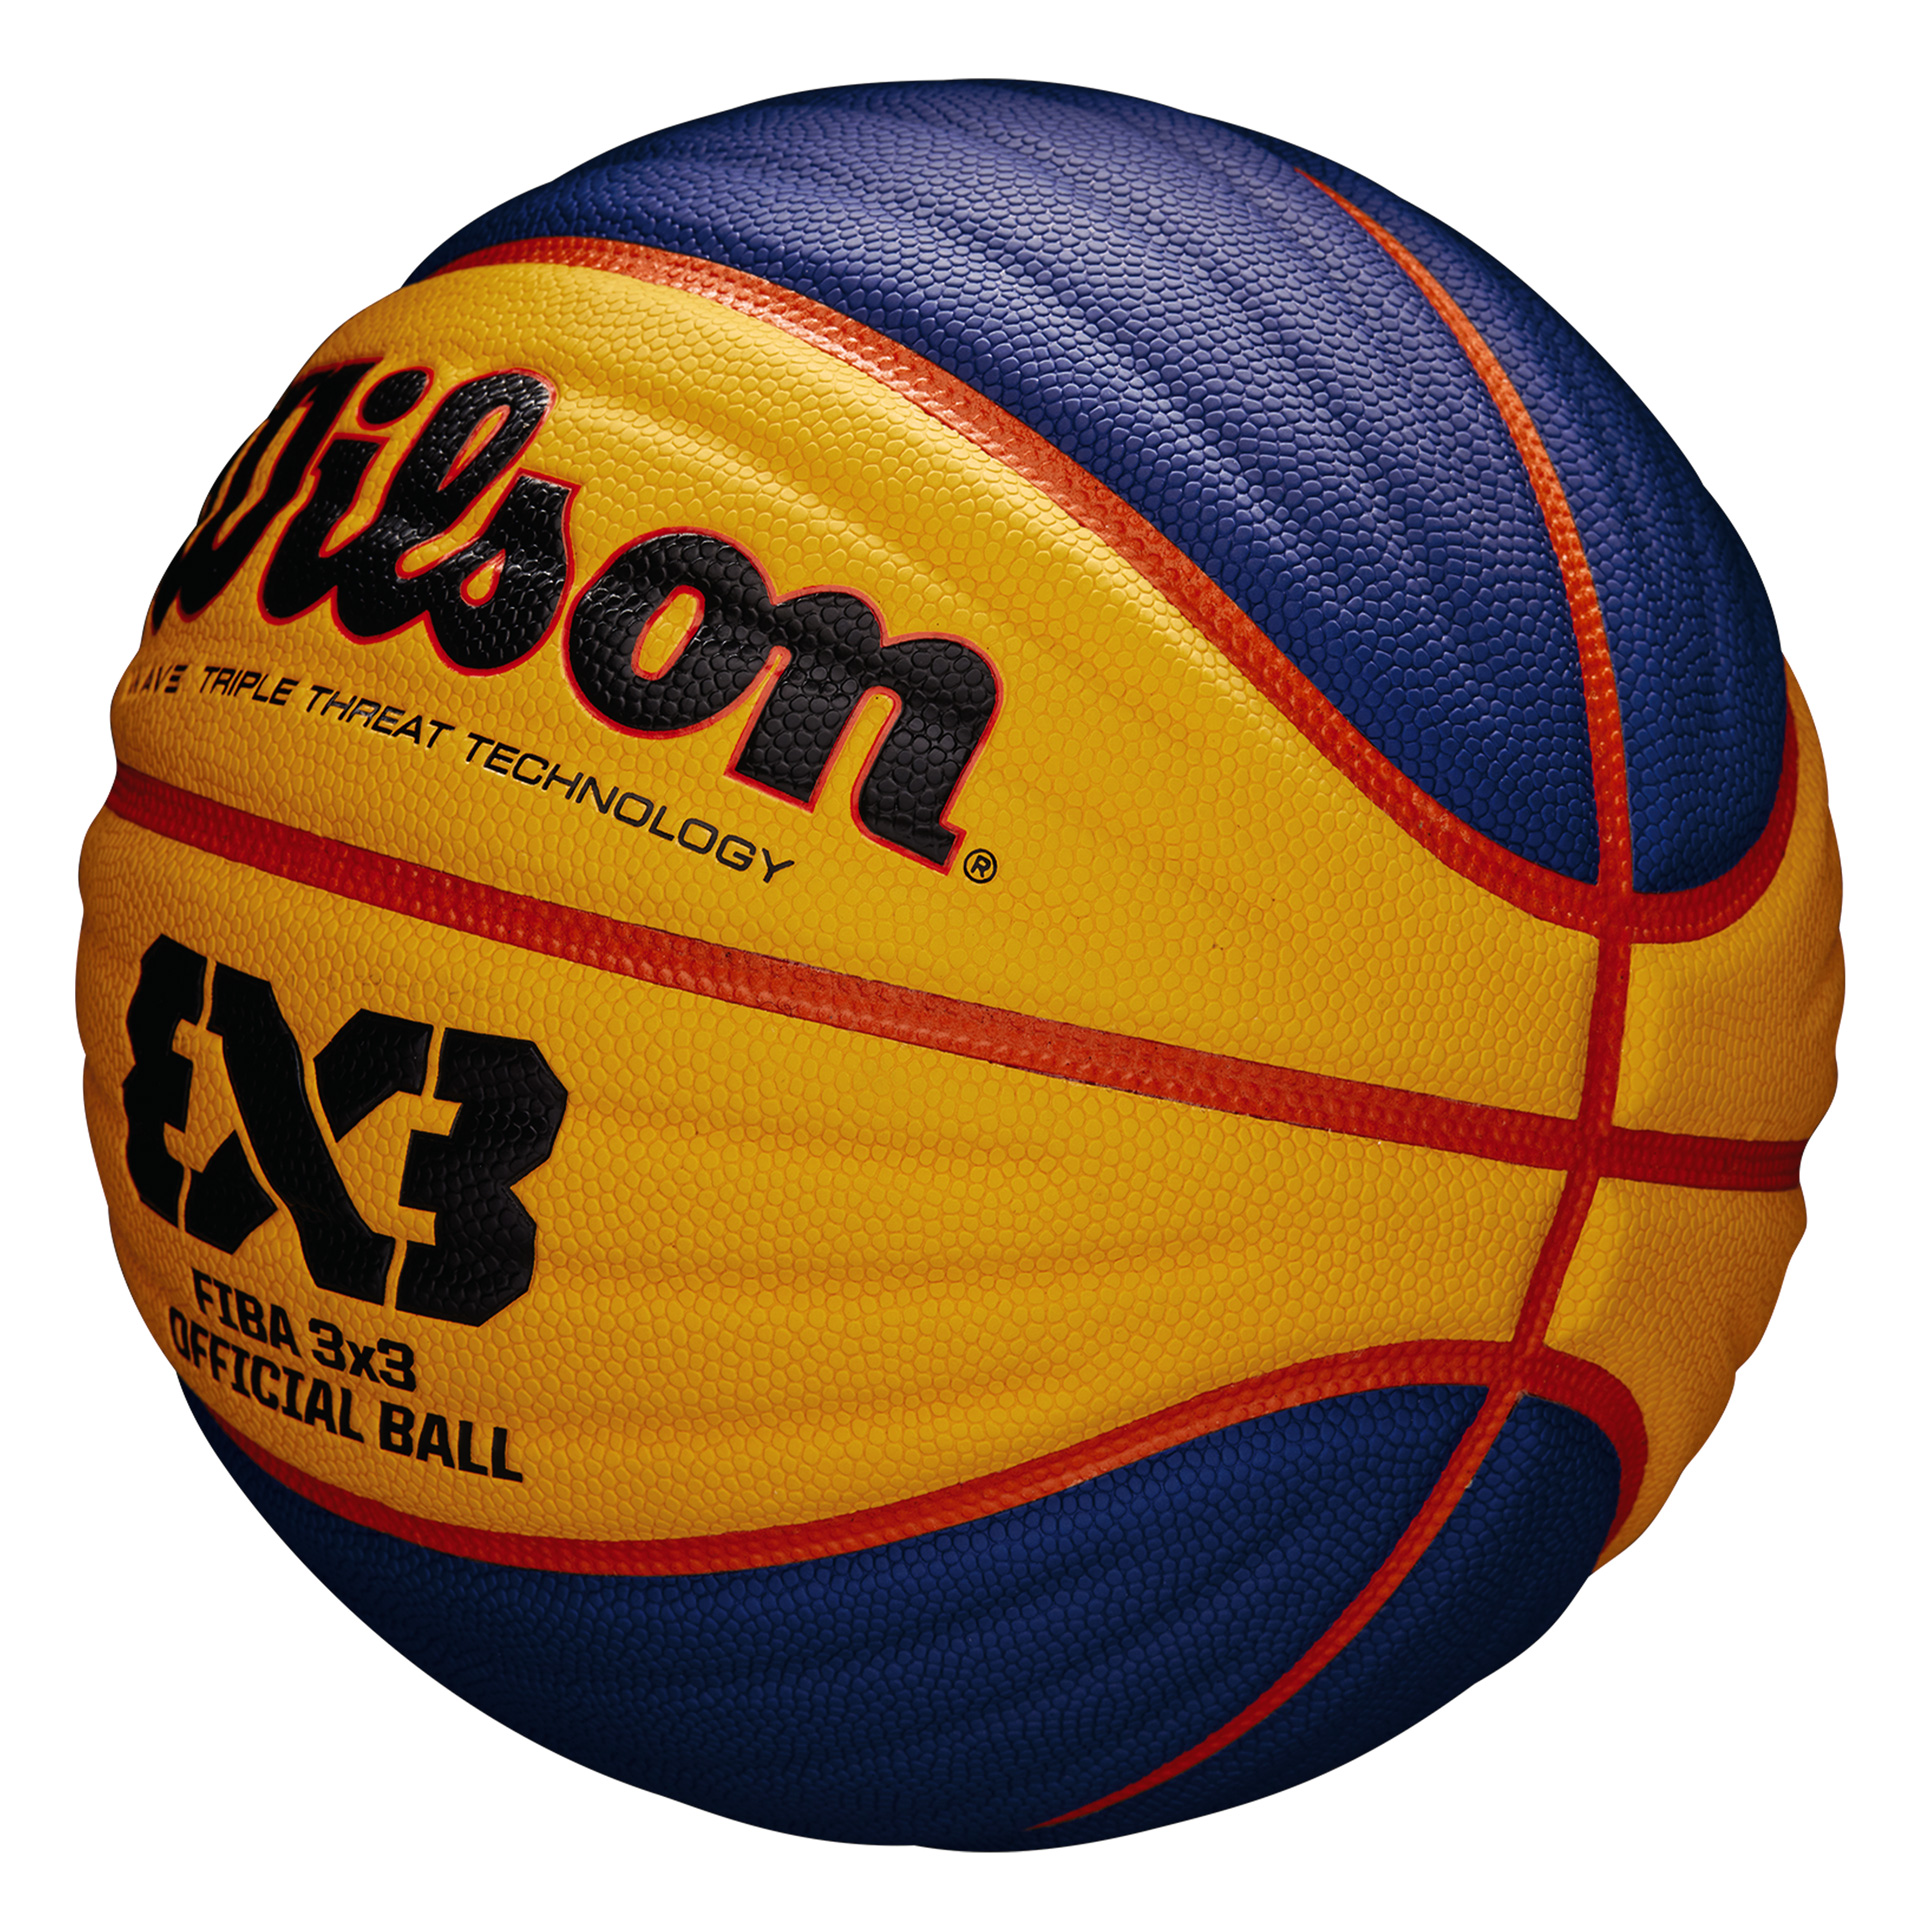 Balon Baloncesto Wilson Fiba 3X3 Oficial